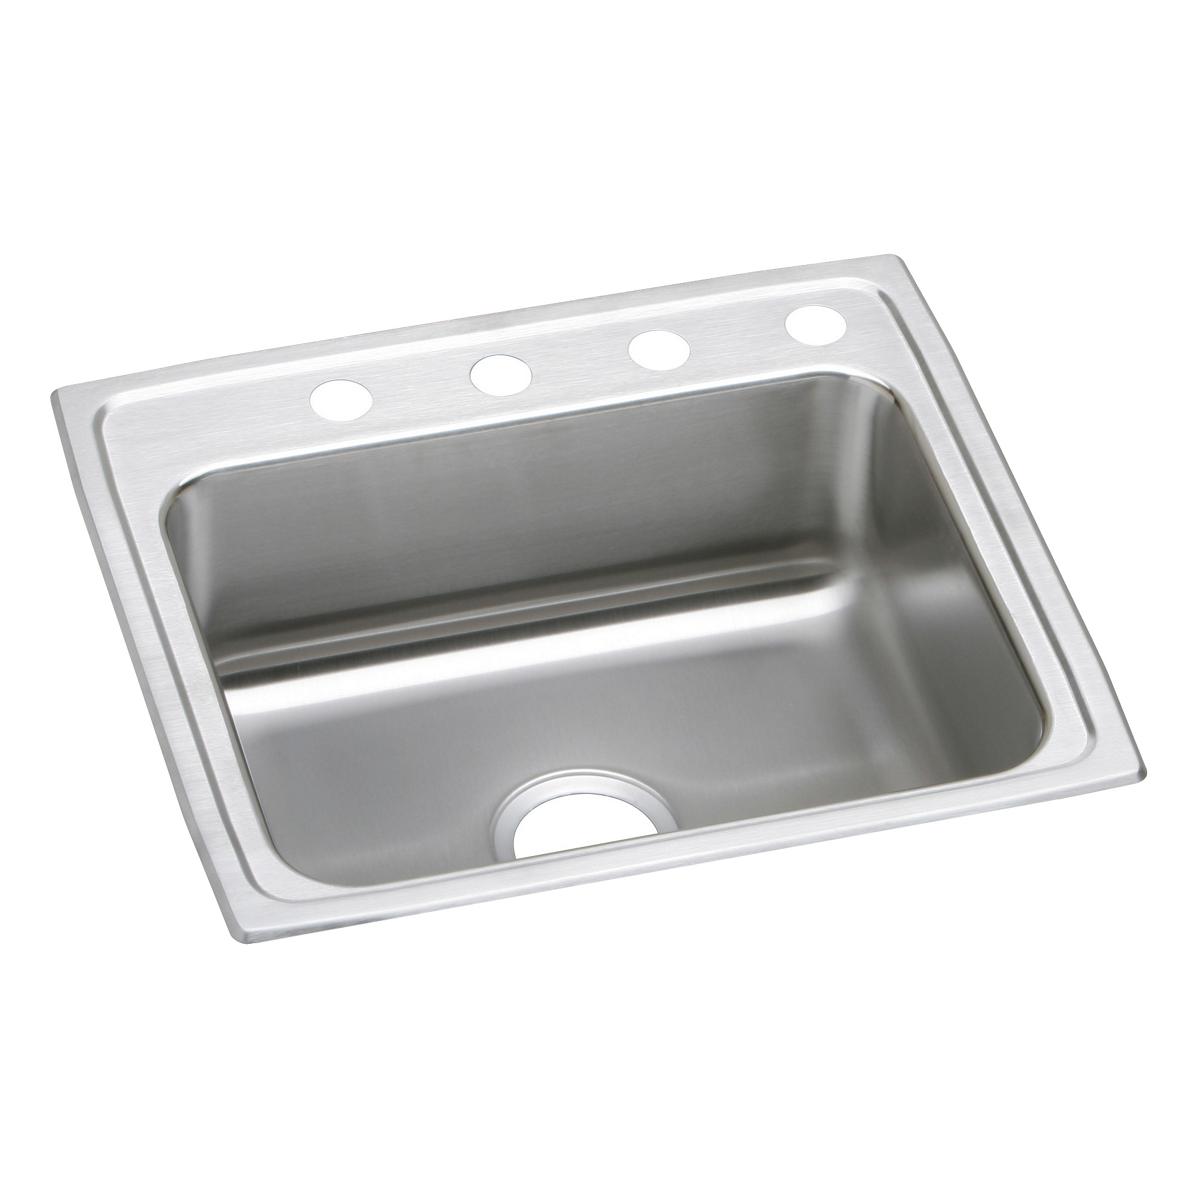 Elkay Stainless Steel Single Bowl Drop-in Sink 1257867